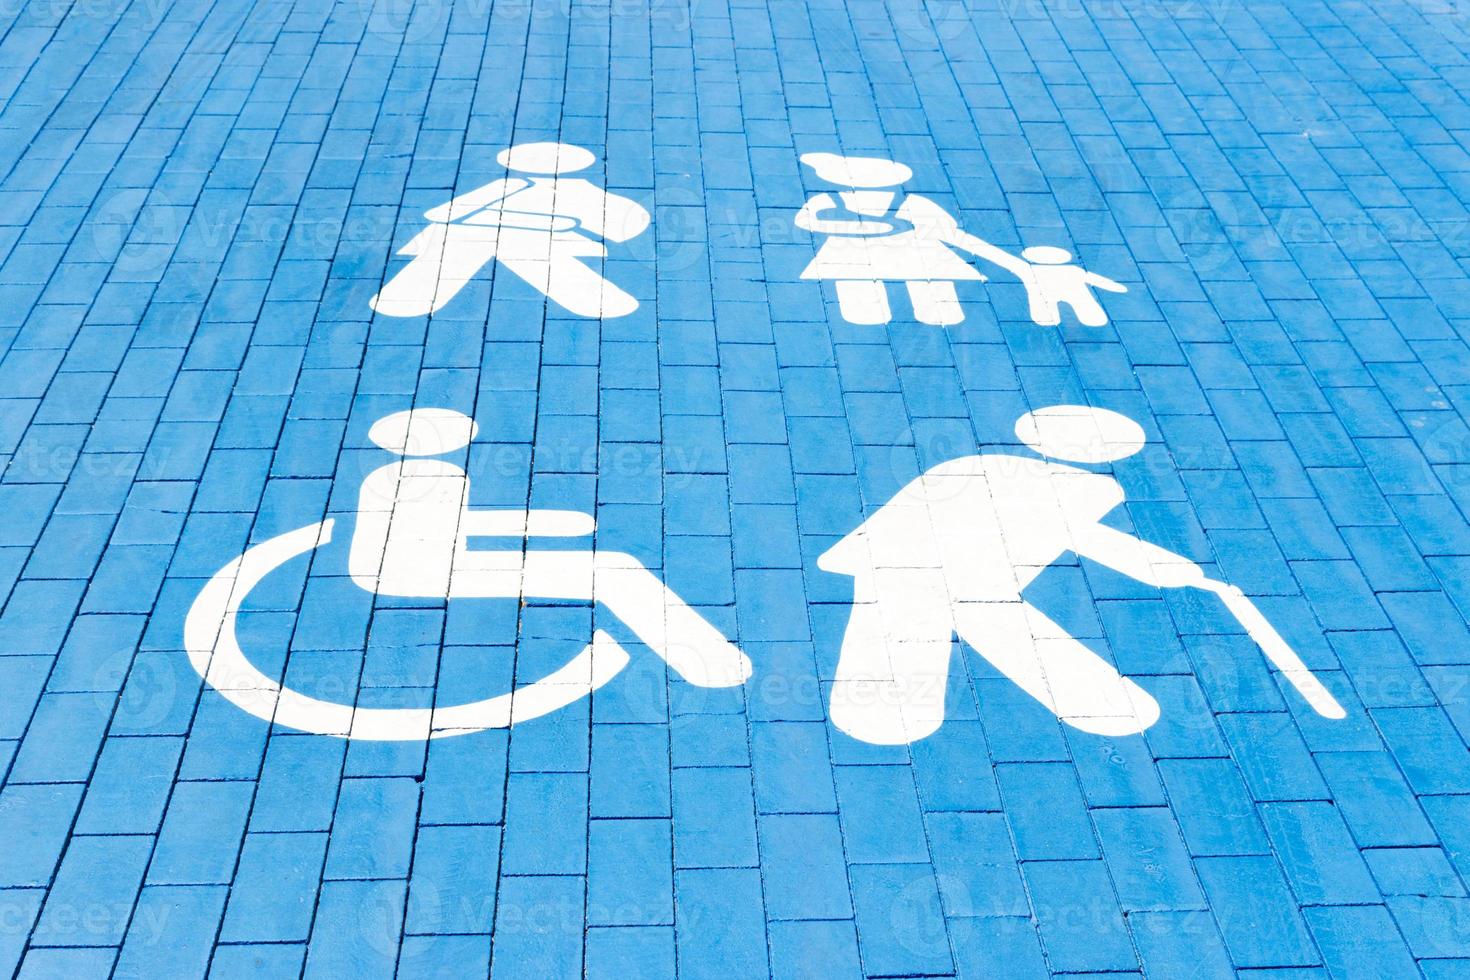 vaga para deficientes, mãe com filho, idoso e homem com gesso. quadrado azul no asfalto foto